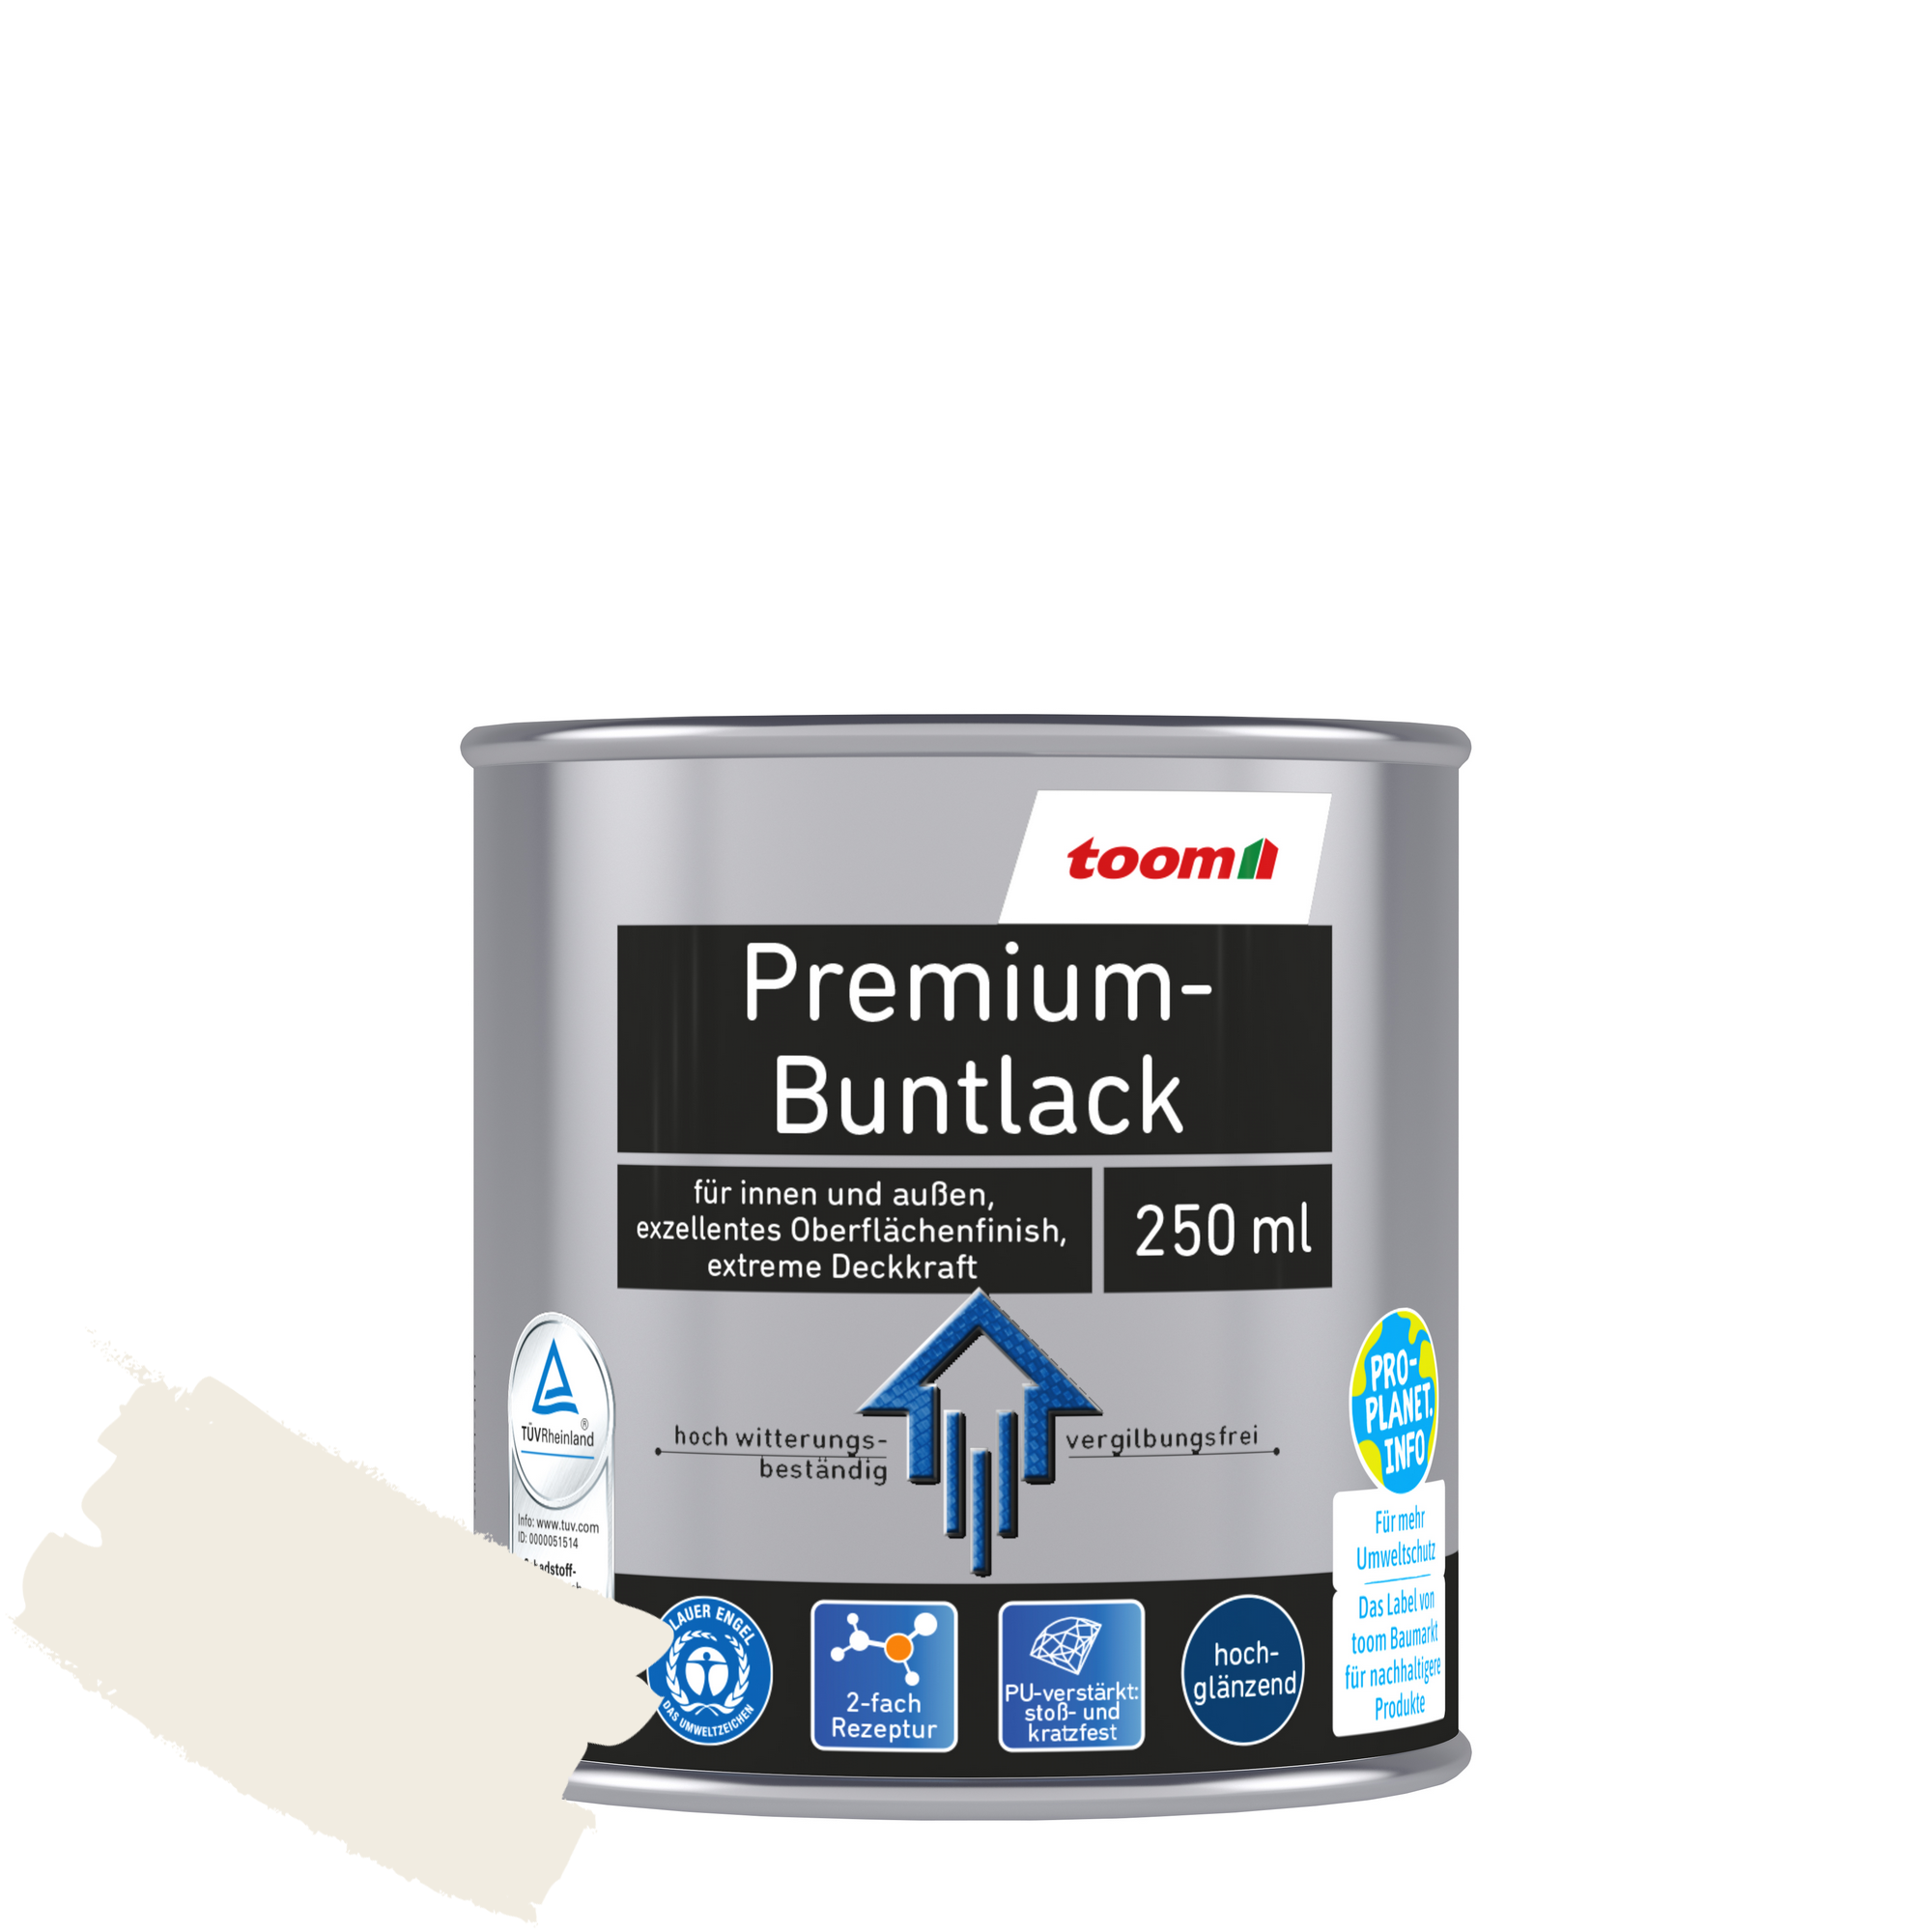 Premium-Buntlack reinweiß glänzend 250 ml + product picture